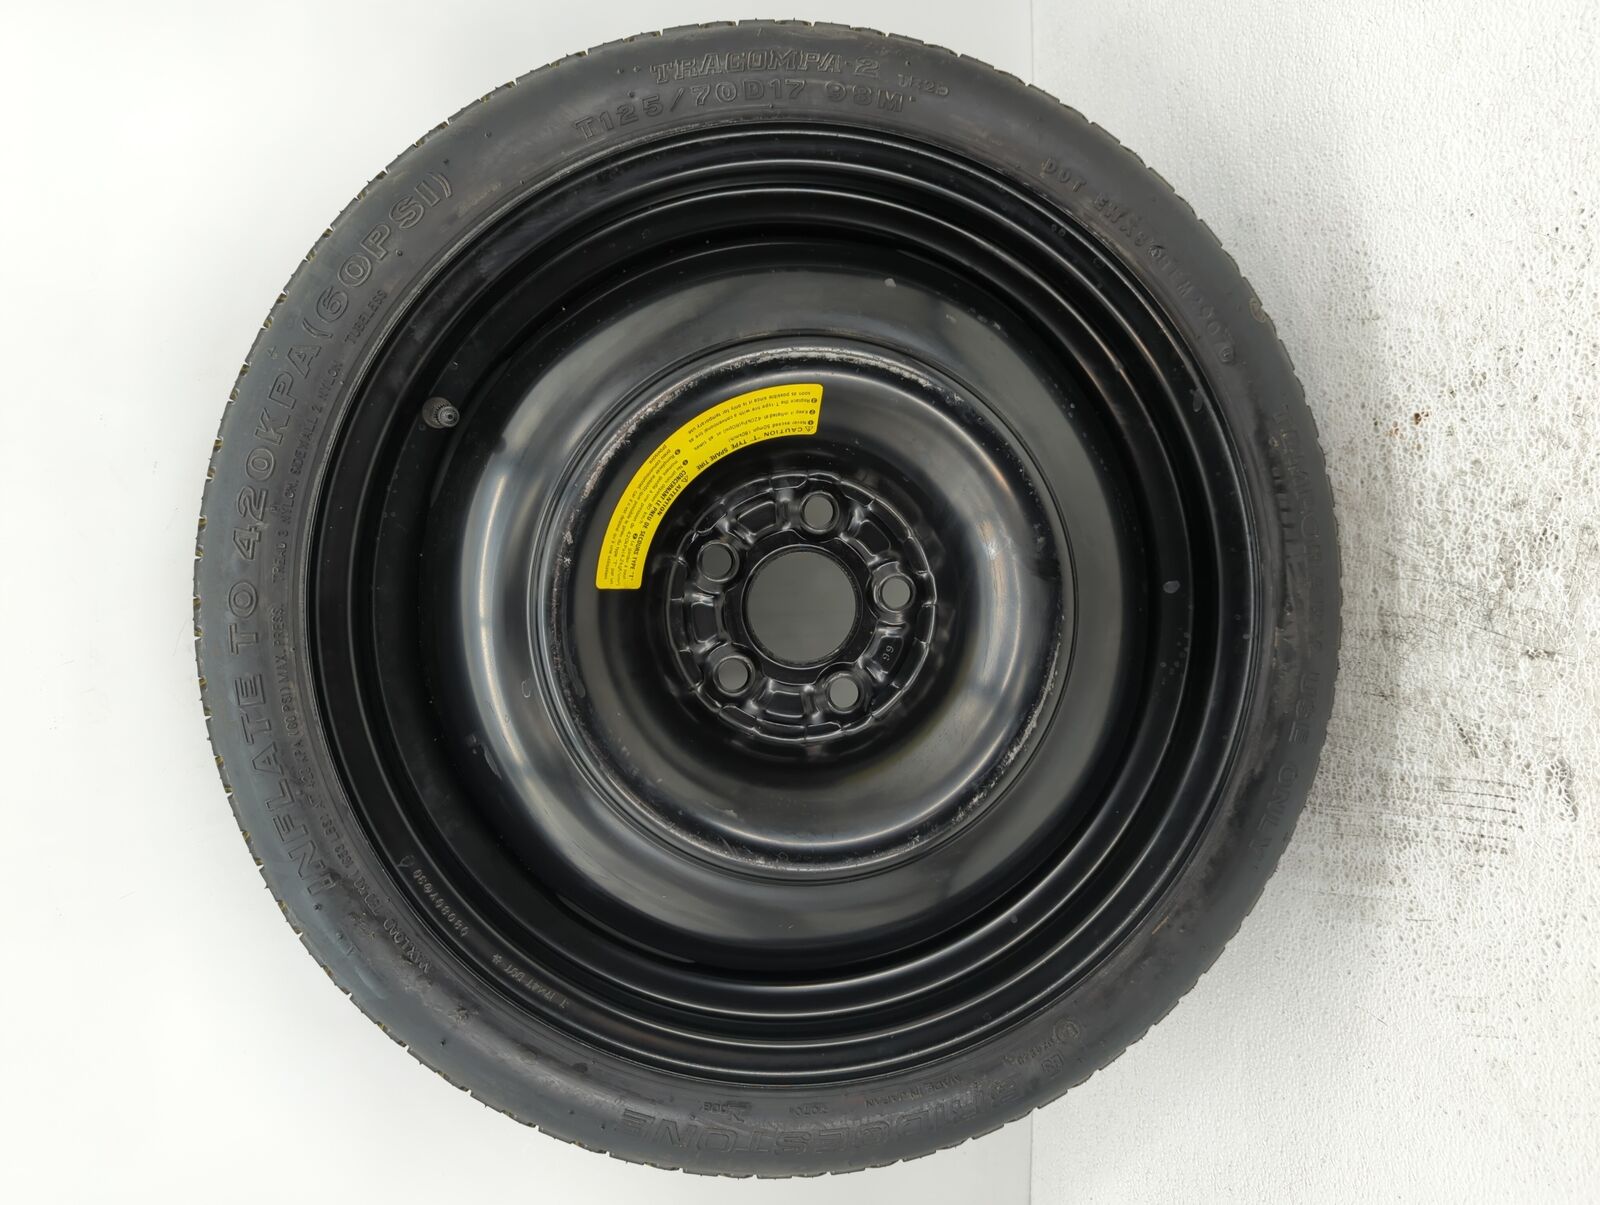 2004-2008 Suzuki Forenza Spare Donut Tire Wheel Rim Oem KRJFT